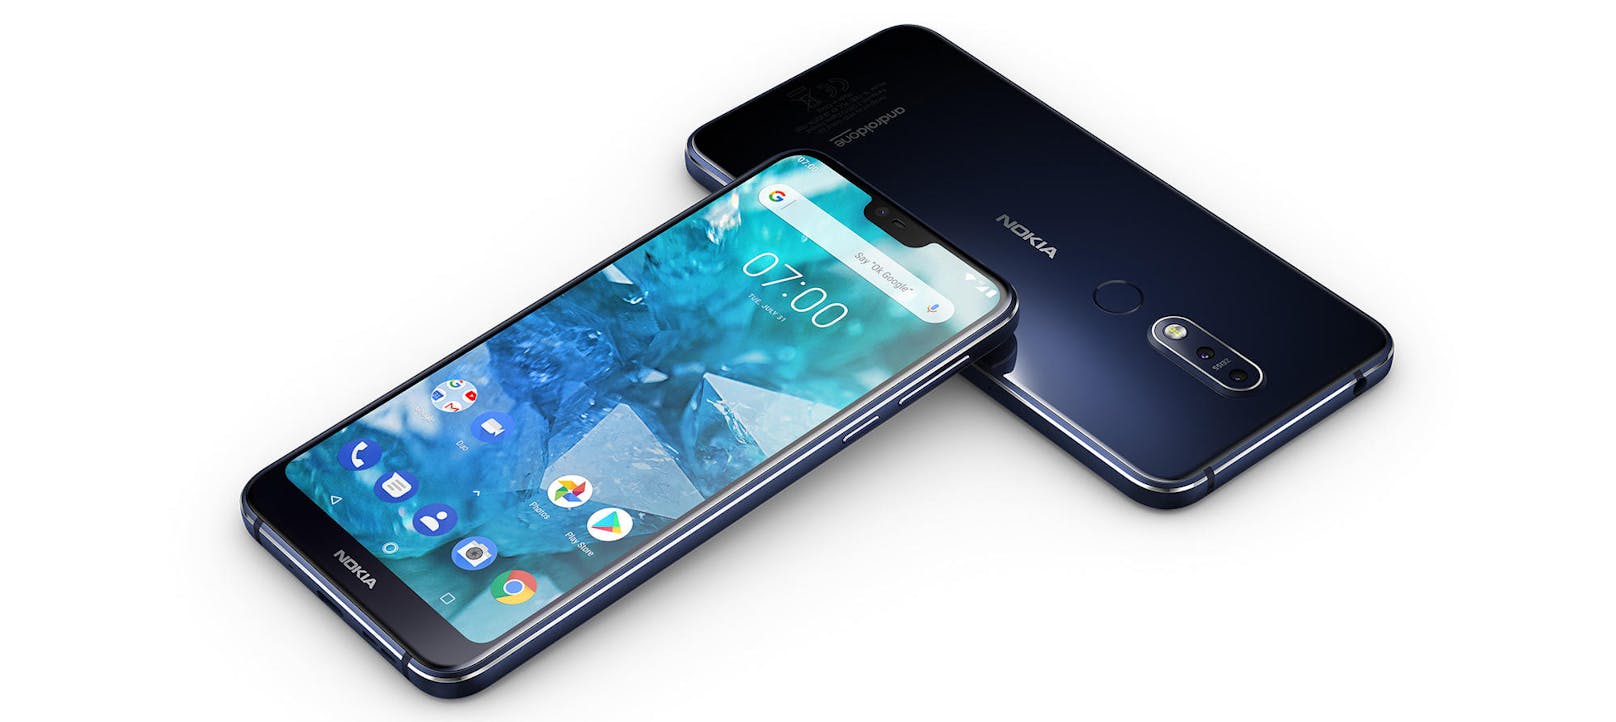 <b>07. Oktober 2018:</b> HMD Global, the Home of Nokia Phones, kündigt das Nokia 7.1 an, das erste Smartphone mit PureDisplay-Bildschirmtechnologie, das Bilderleben mit Hochkontrastauflösung, verstärkter Klarheit und verbesserter Farbkomposition auf die nächste Ebene bringt. Das herausragende HDR-Display des Nokia 7.1 ist in meisterhaft gefertigtes Design eingebettet und liefert dank dualer Hauptkamera mit Zweiphasenerkennung und ZEISS-Optik ein verbessertes Bilderlebnis. Das Nokia 7.1 ist in Gloss Midnight Blue und Gloss Steel in ausgewählten Märkten ab Oktober erhältlich, in zwei RAM/ROM-Varianten - 3GB/32GB und 4GB/64GB. Der Verkaufspreis liegt, abhängig vom lokalen Markt, zwischen 299 Euro und 349 Euro.